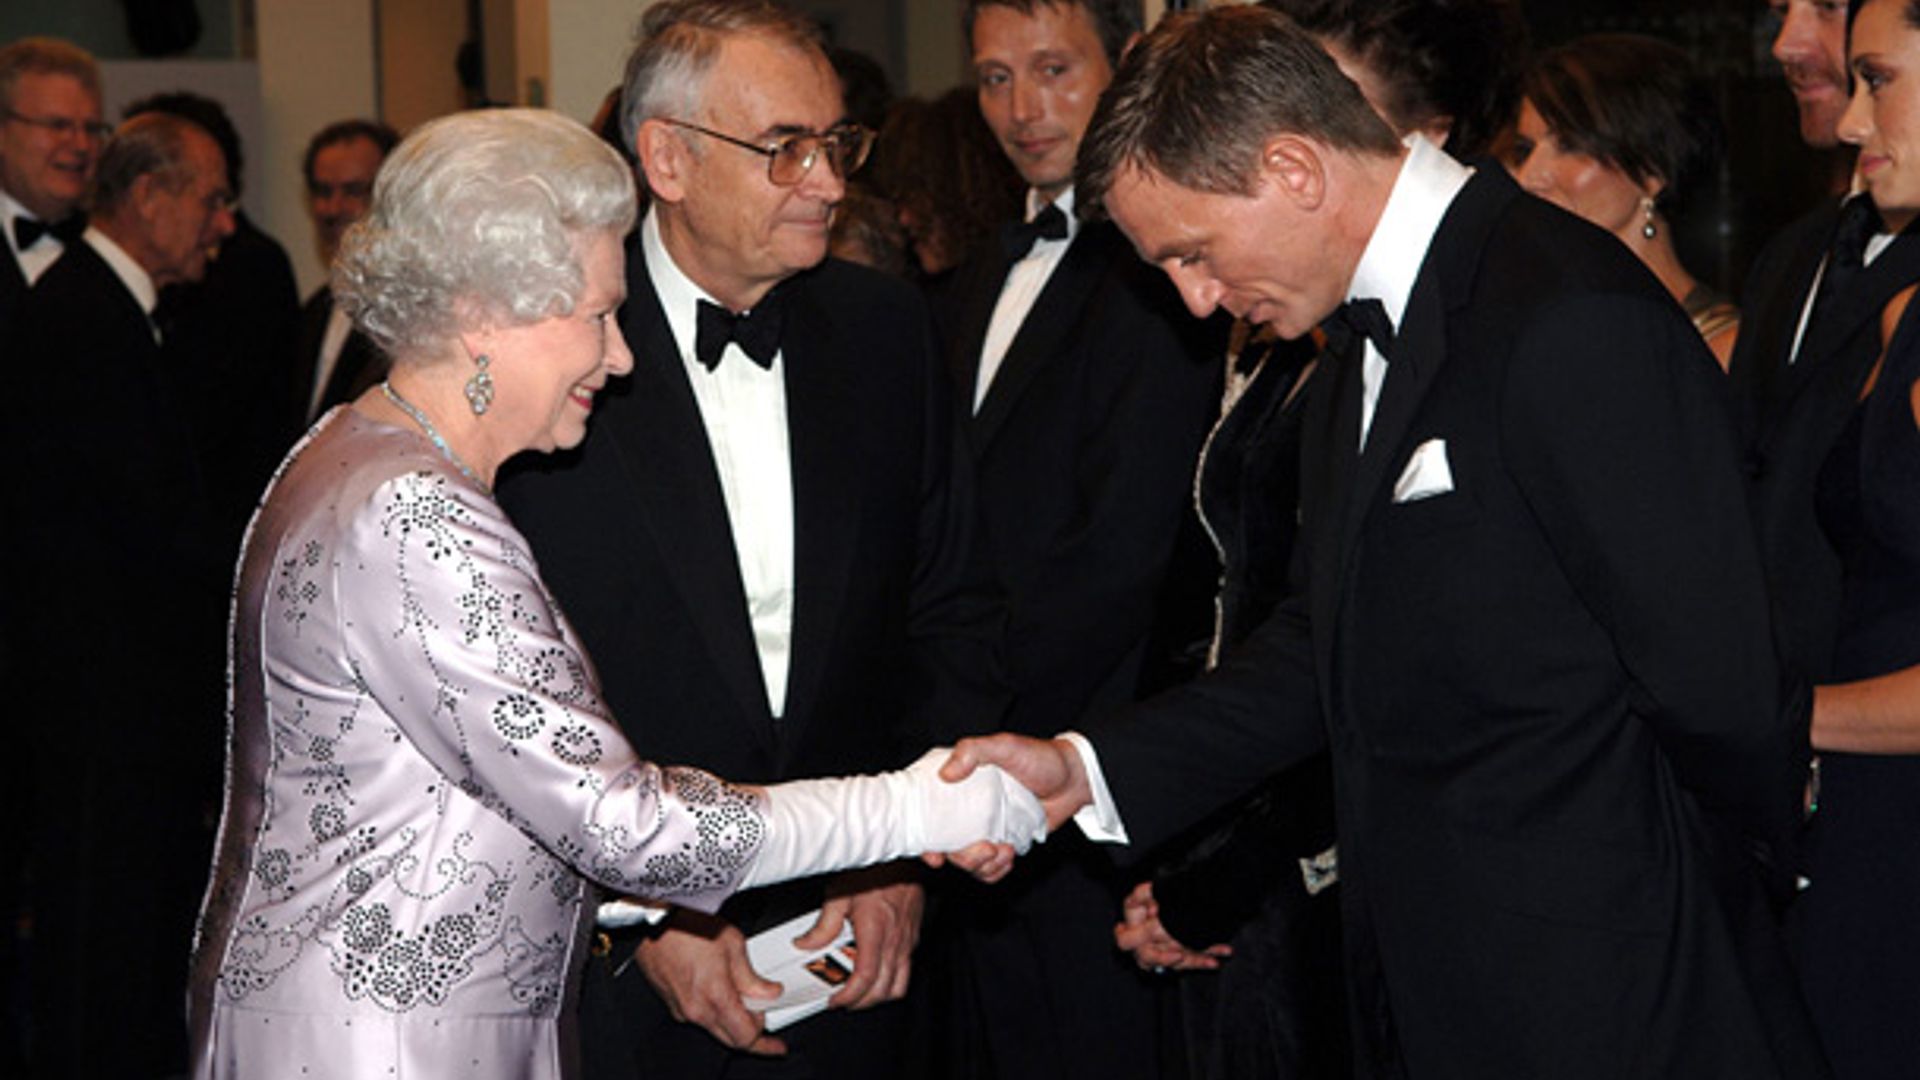 Daniel Craig and wife Rachel Weisz dine with the Queen